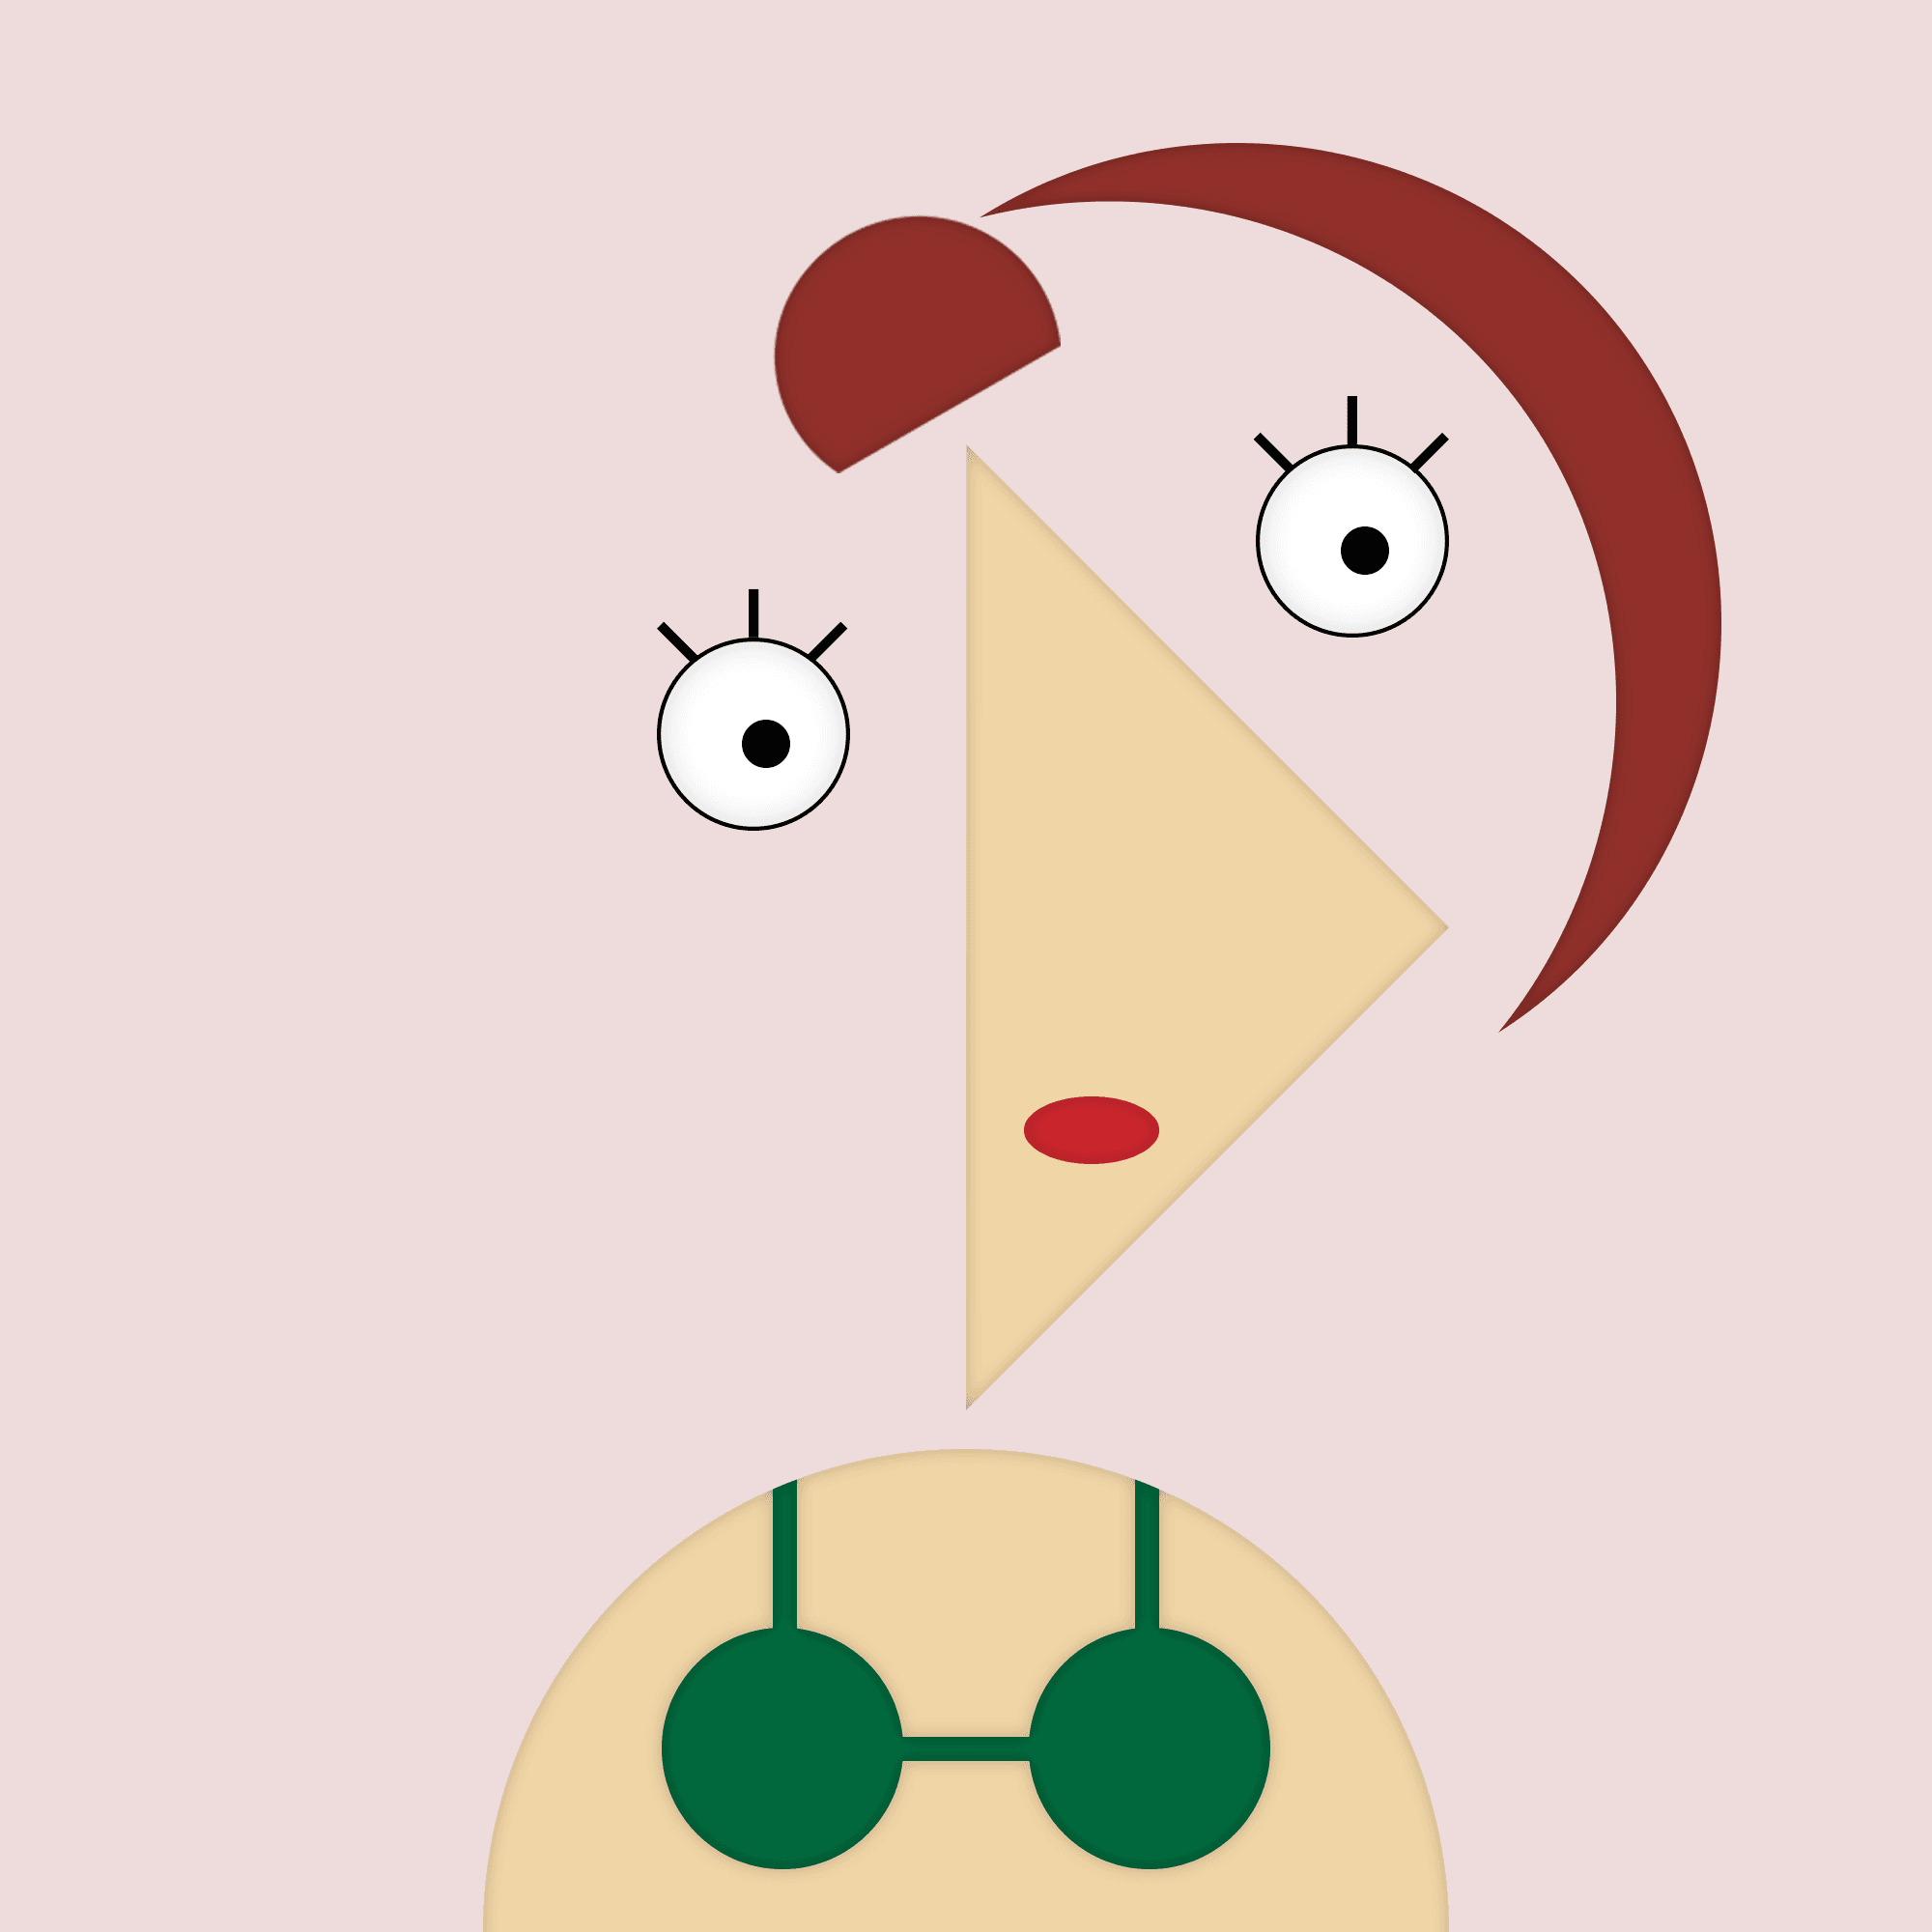 Lady in green bikini